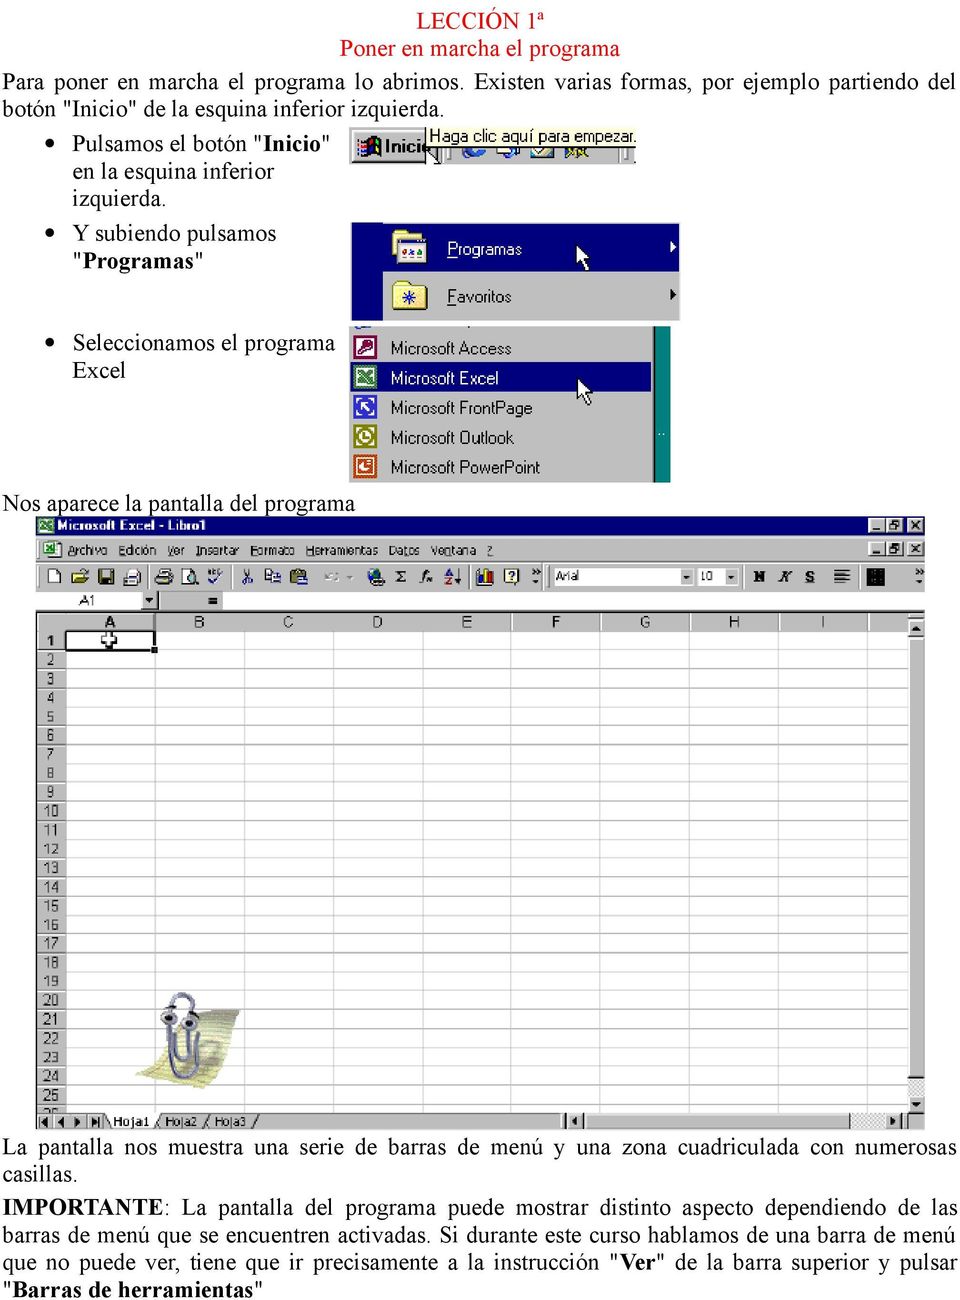 Y subiendo pulsamos "Programas" Seleccionamos el programa Excel Nos aparece la pantalla del programa La pantalla nos muestra una serie de barras de menú y una zona cuadriculada con